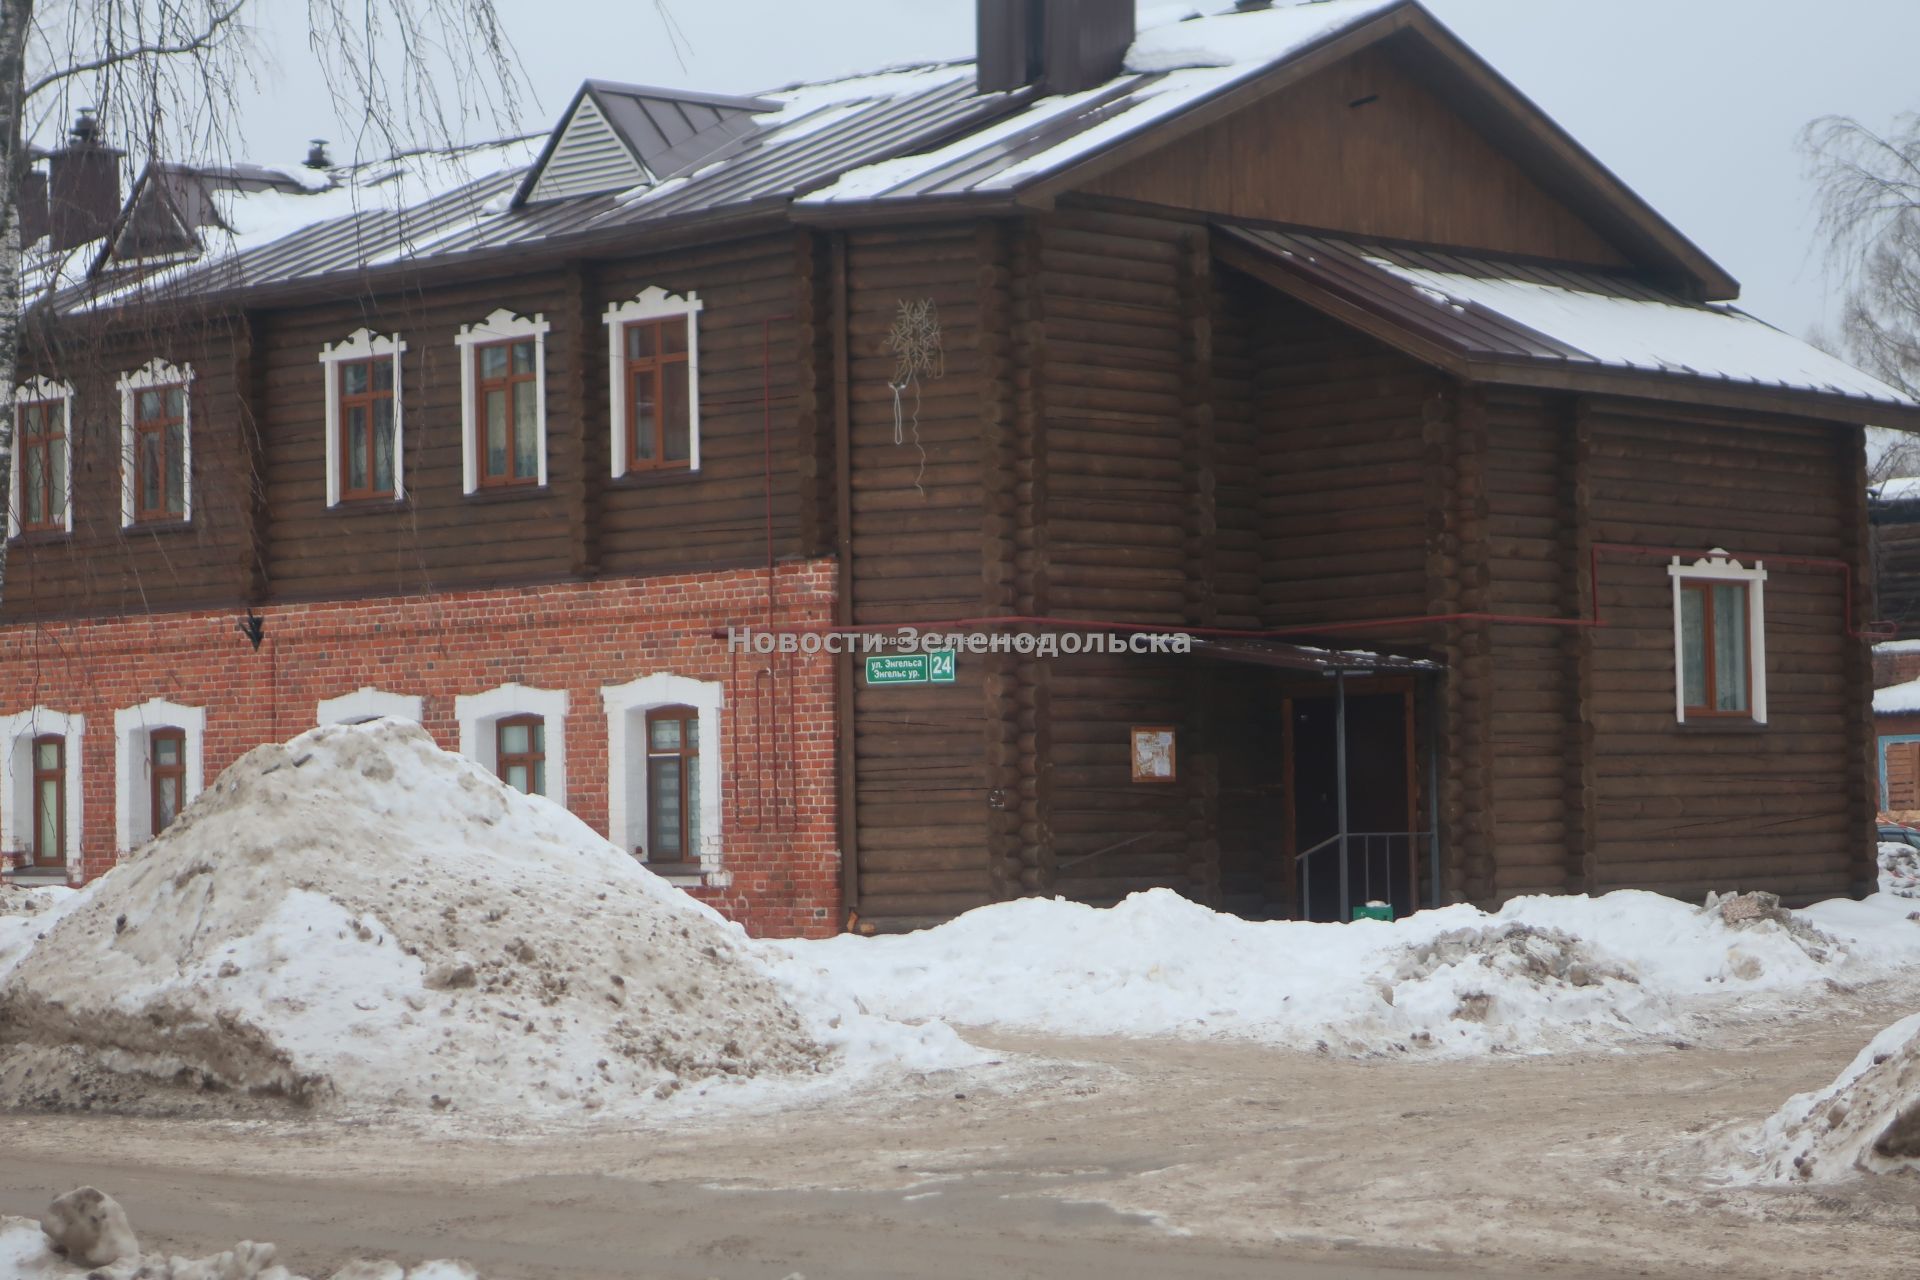 «Ладно я ехала медленно, а так бы быть беде»: В Зеленодольске из-за снежных гор чуть не сбили пешехода